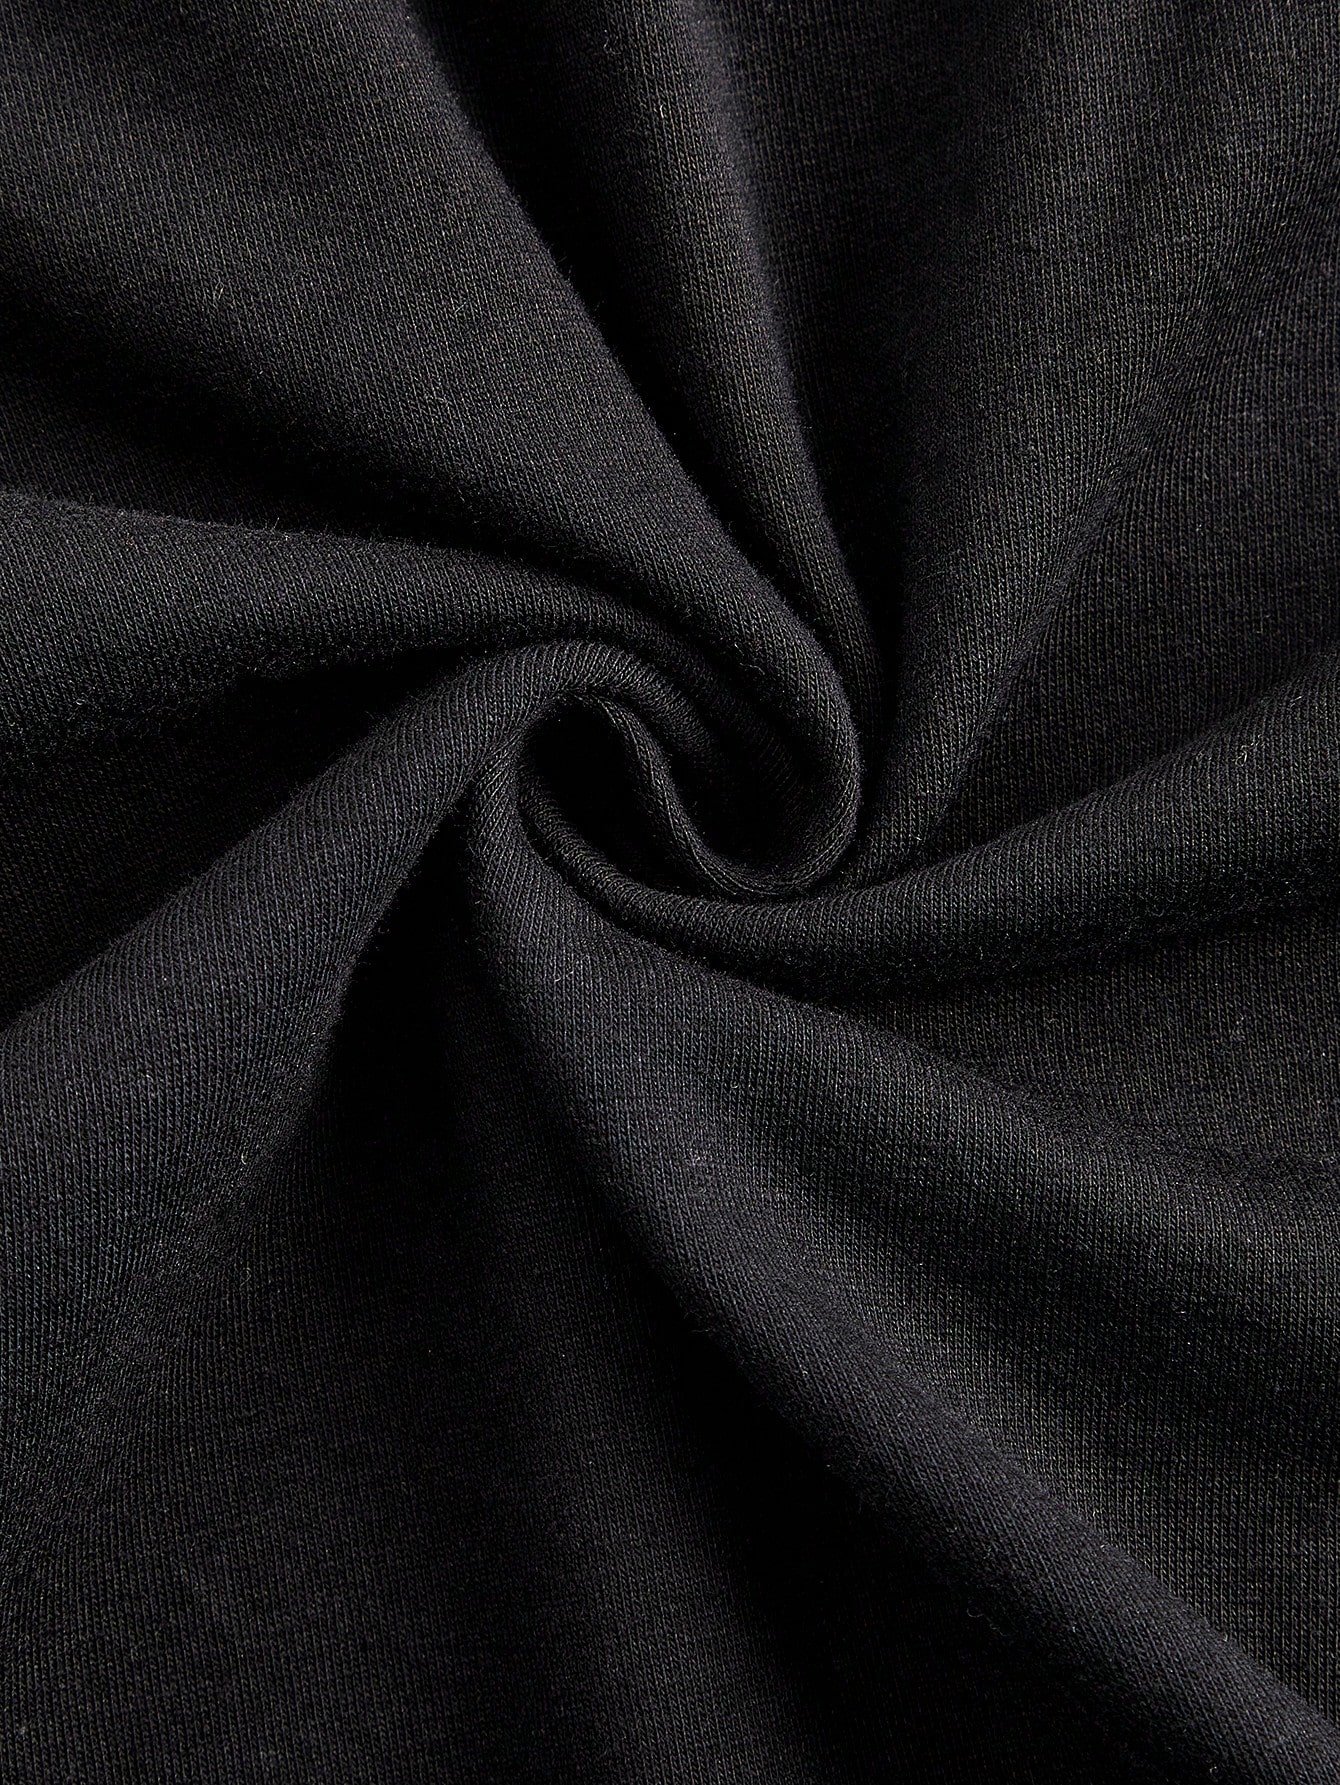 カートゥーン グラフィックtシャツ ブラック